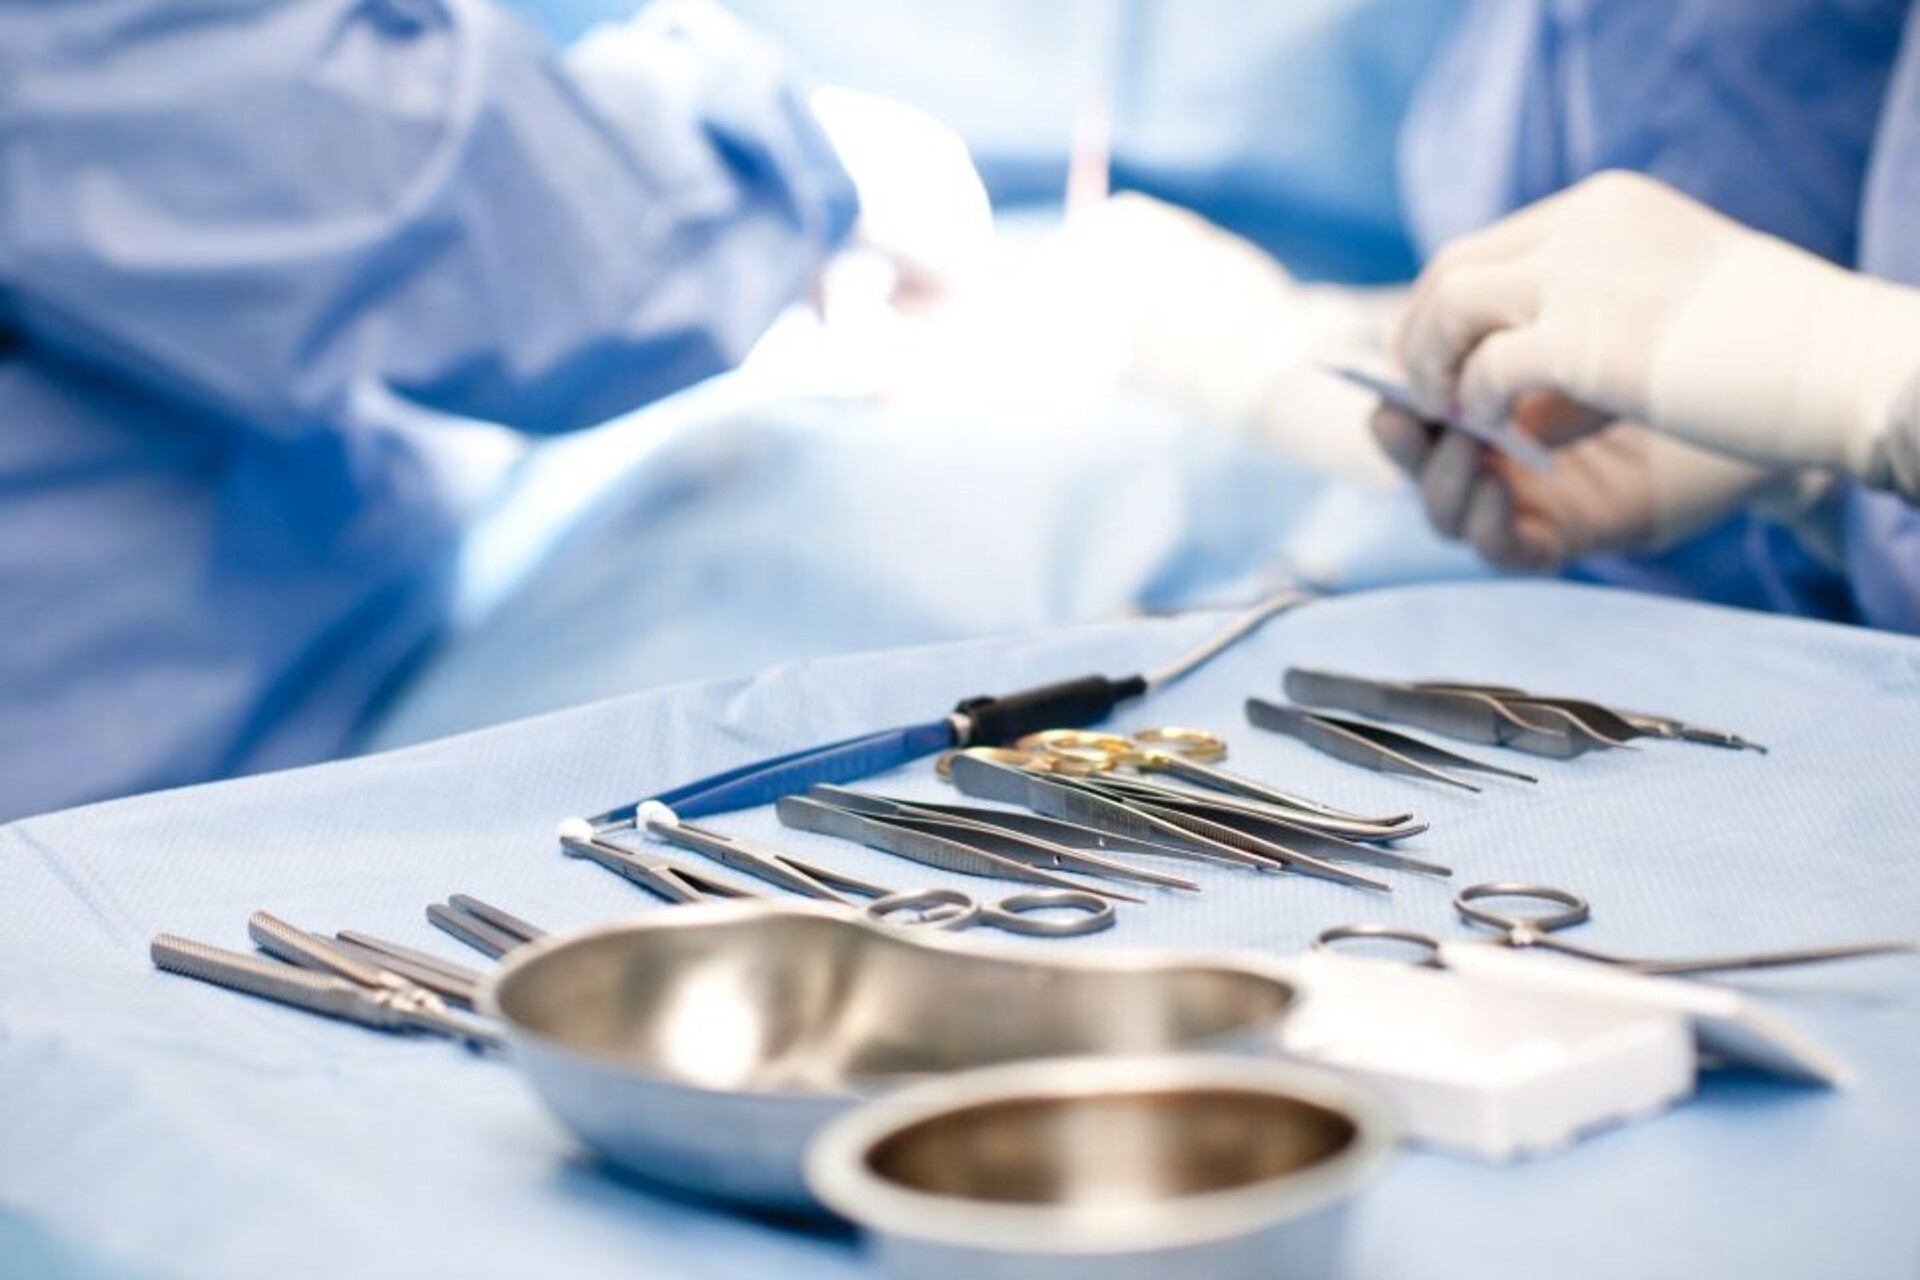 Kapselfibrose: Blick in Operationssaal mit OP-Besteck